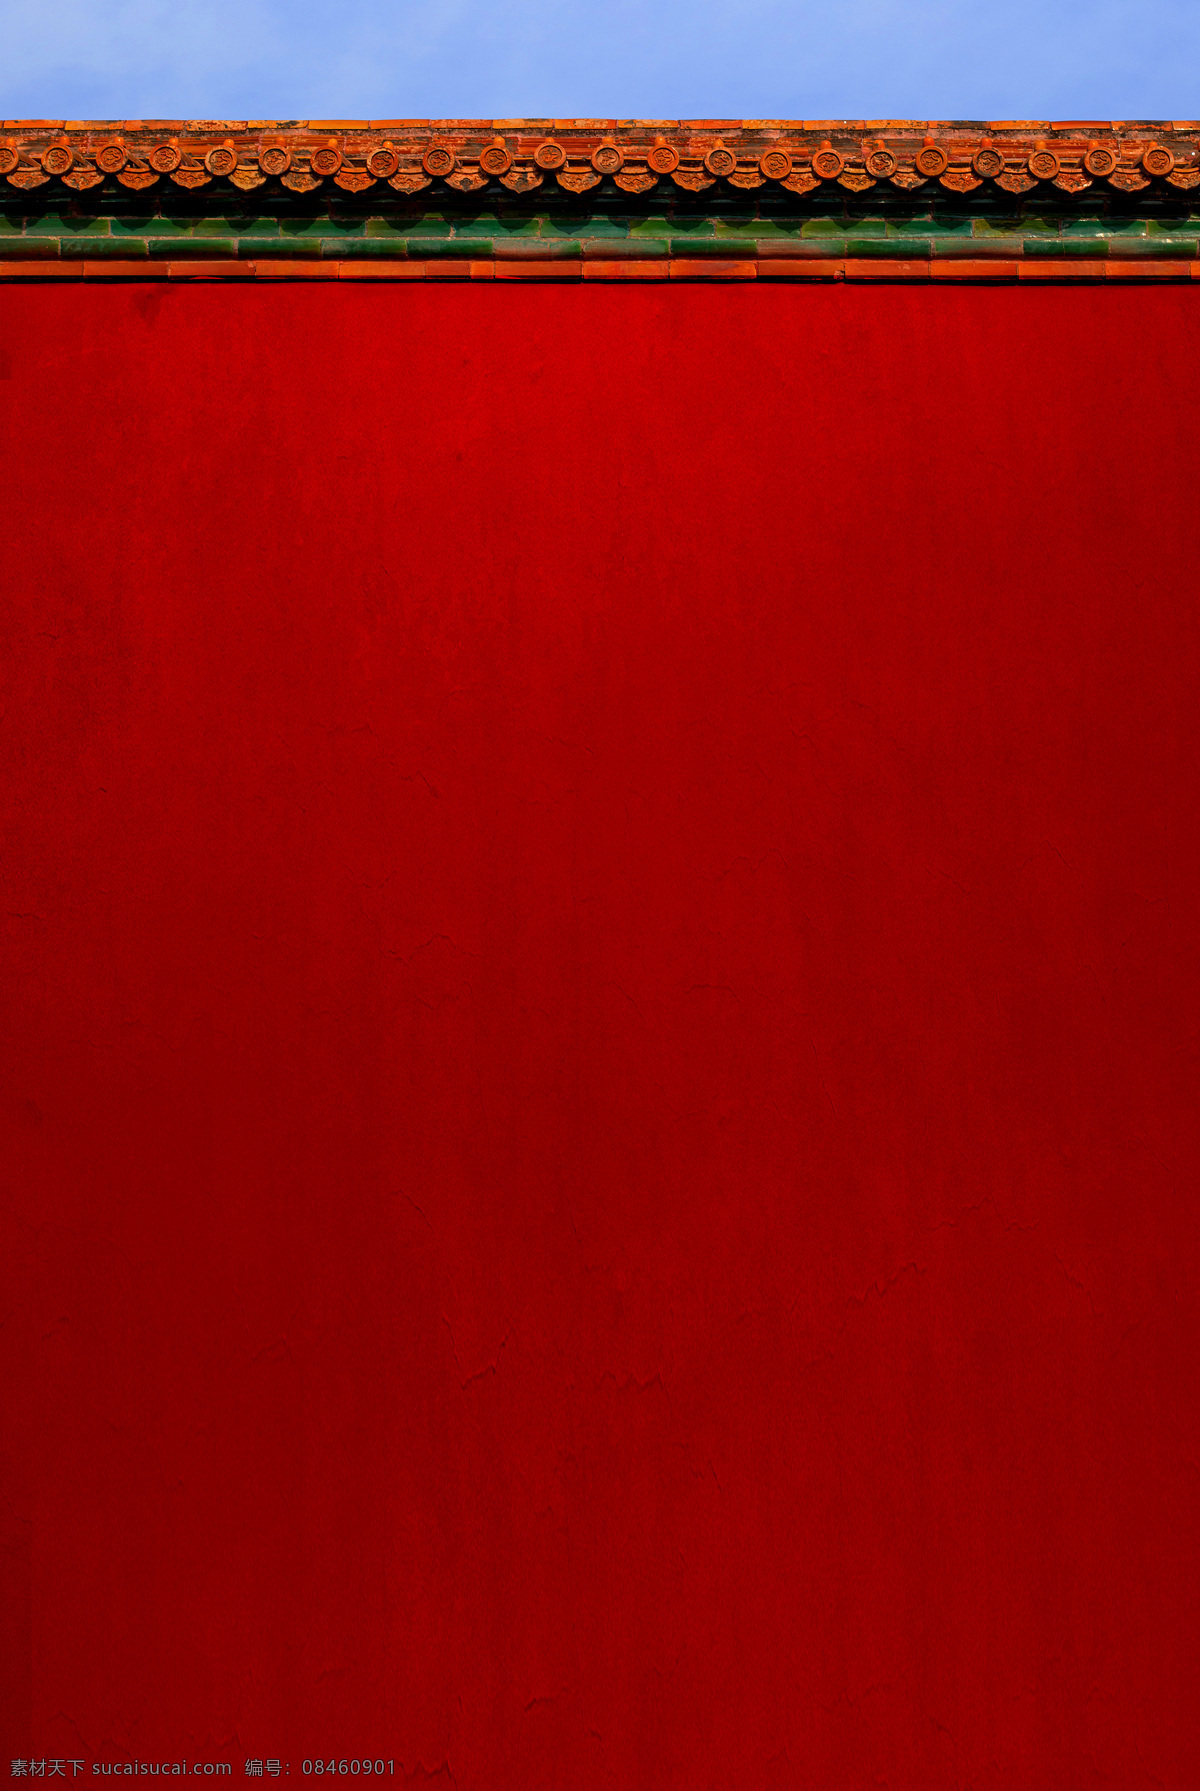 故宫红墙 红色背景 房屋墙壁 红色 墙壁 红色底图 底纹边框 背景底纹